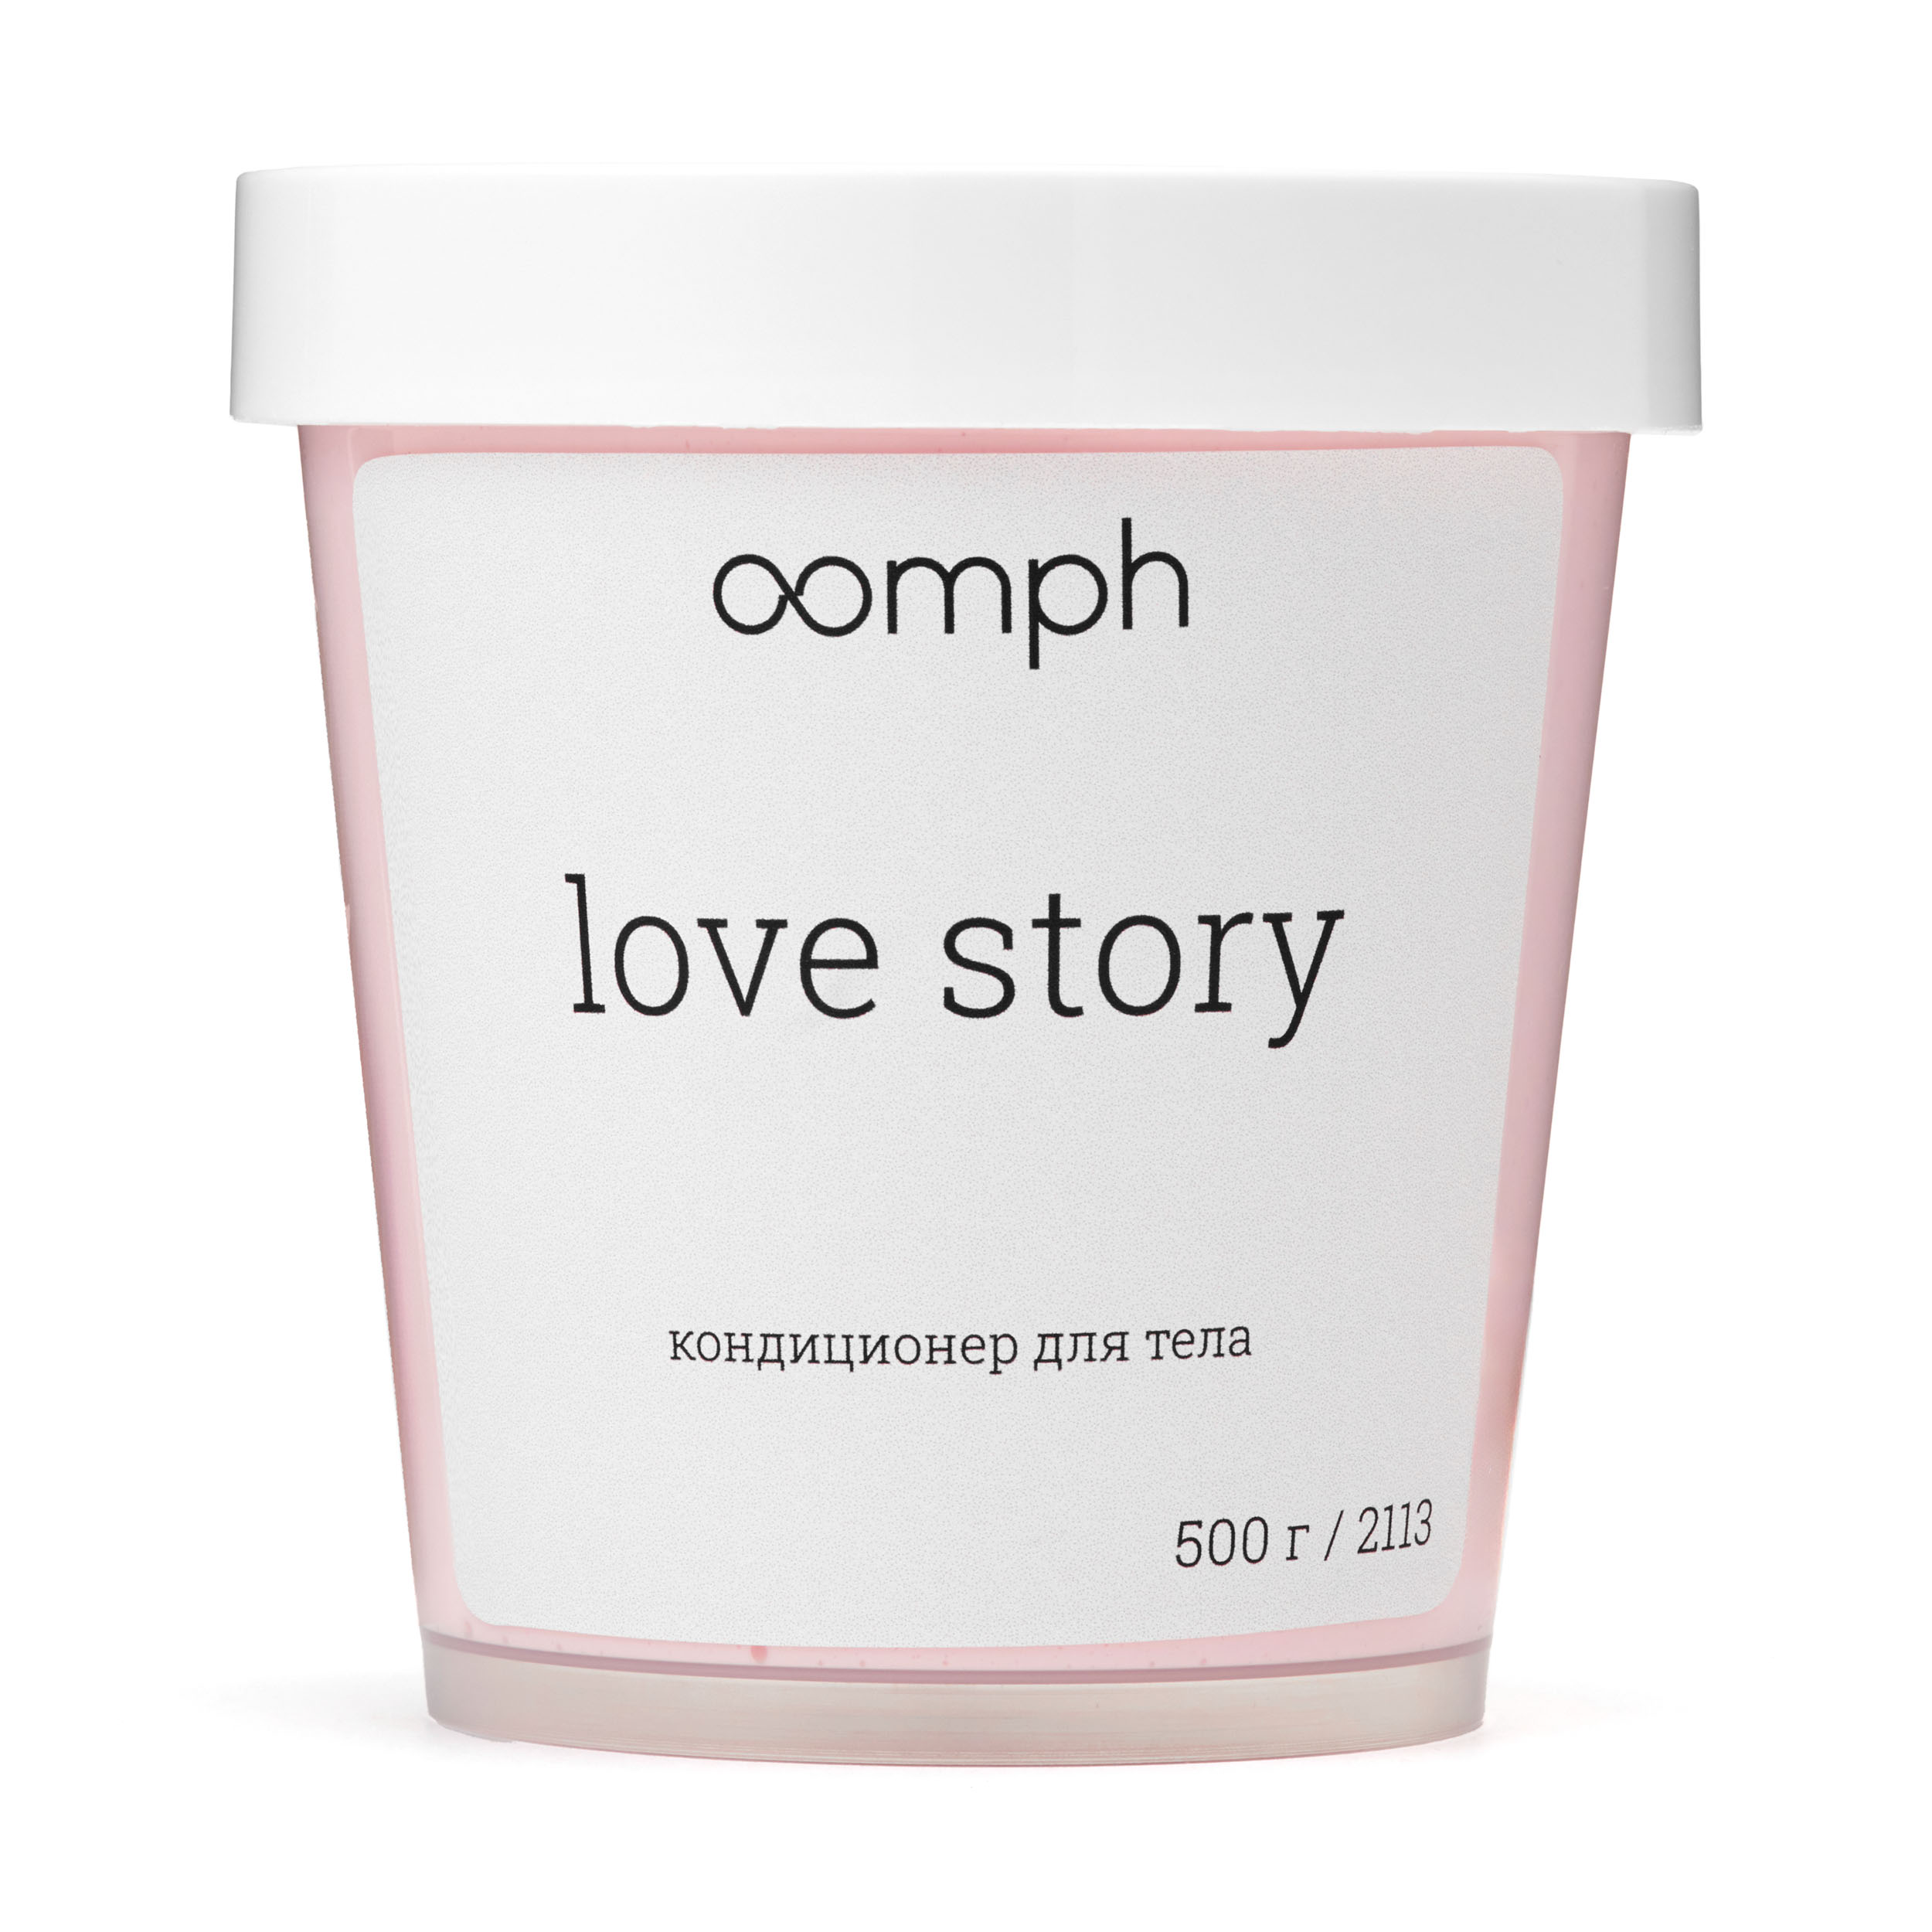 Кондиционер для тела OOMPH Love story 500г ромео и джульетта трагедии